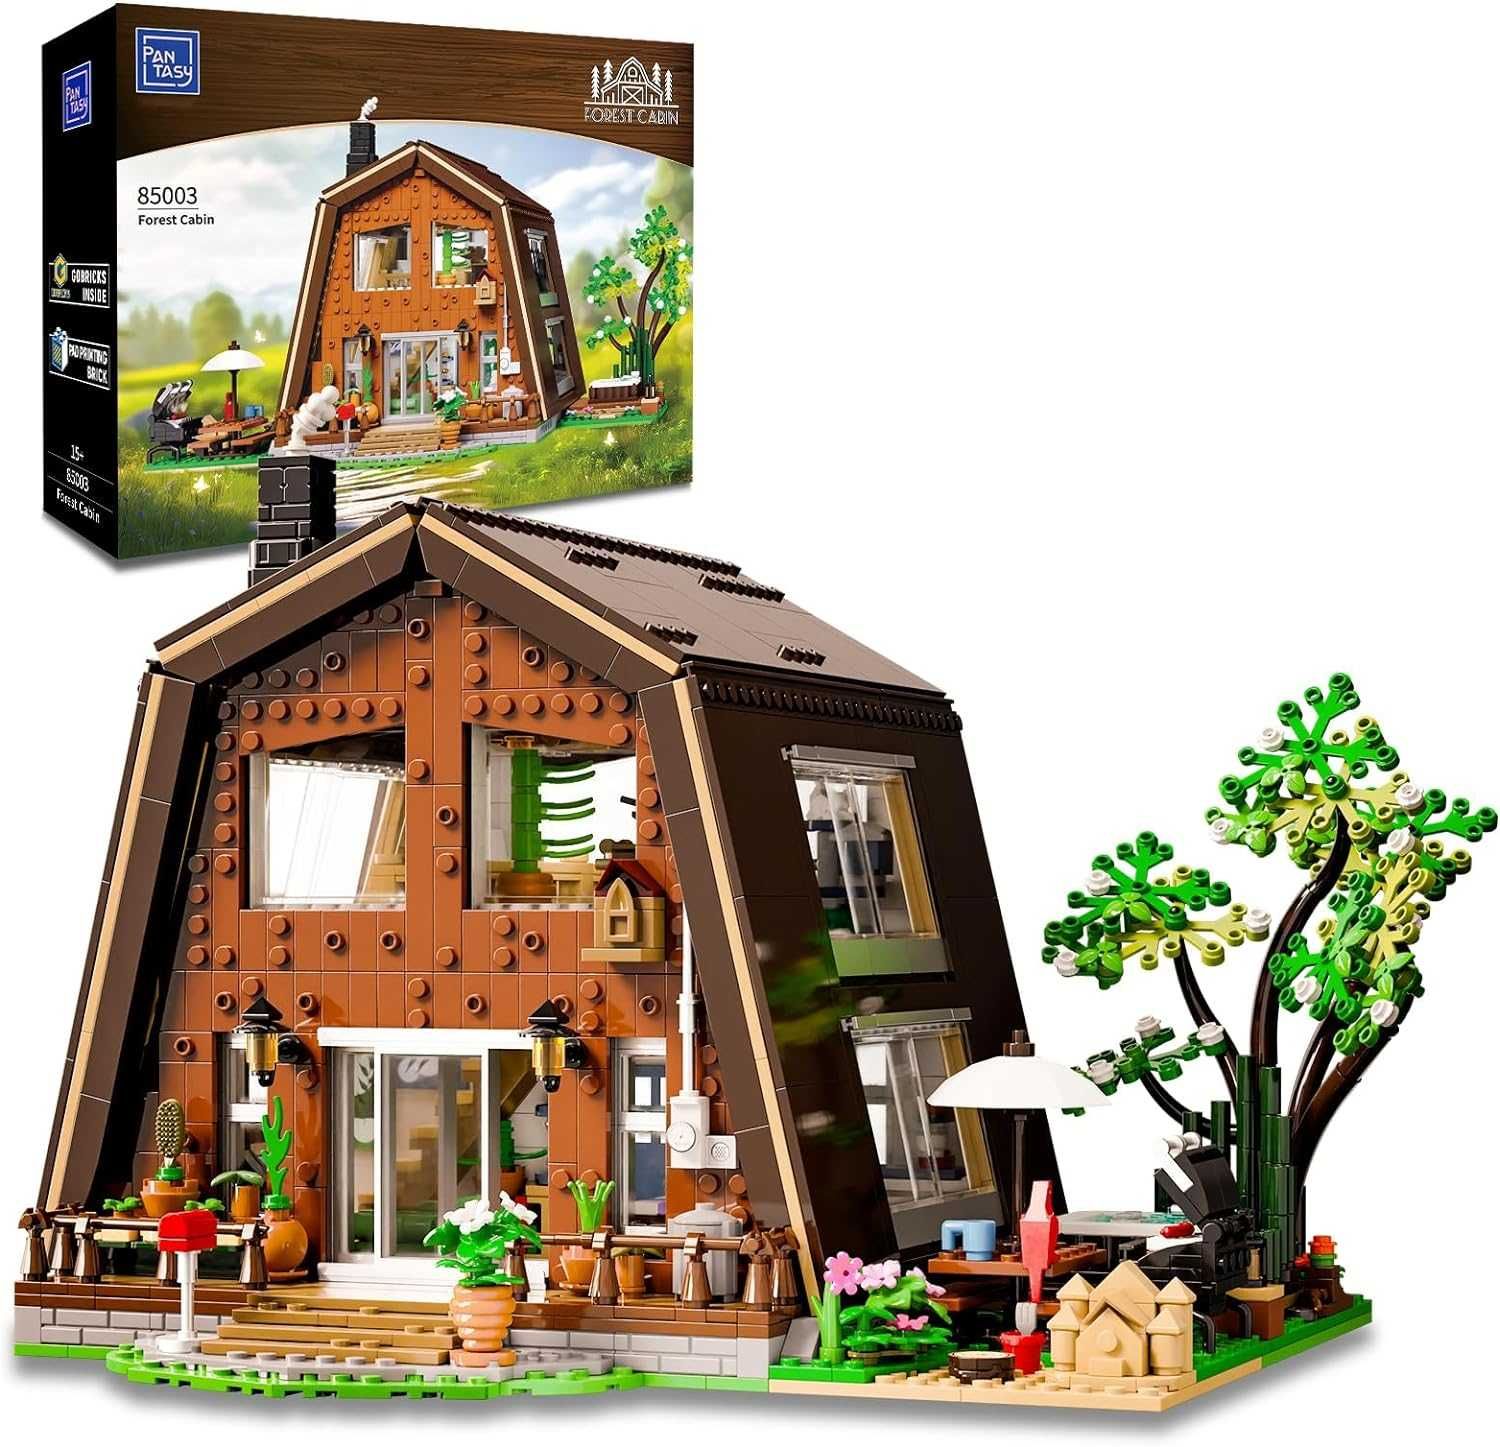 *2010 sz.* Klocki Wiejski Domek Konstrukcyjne Kompatybilne z LEGO NOWE